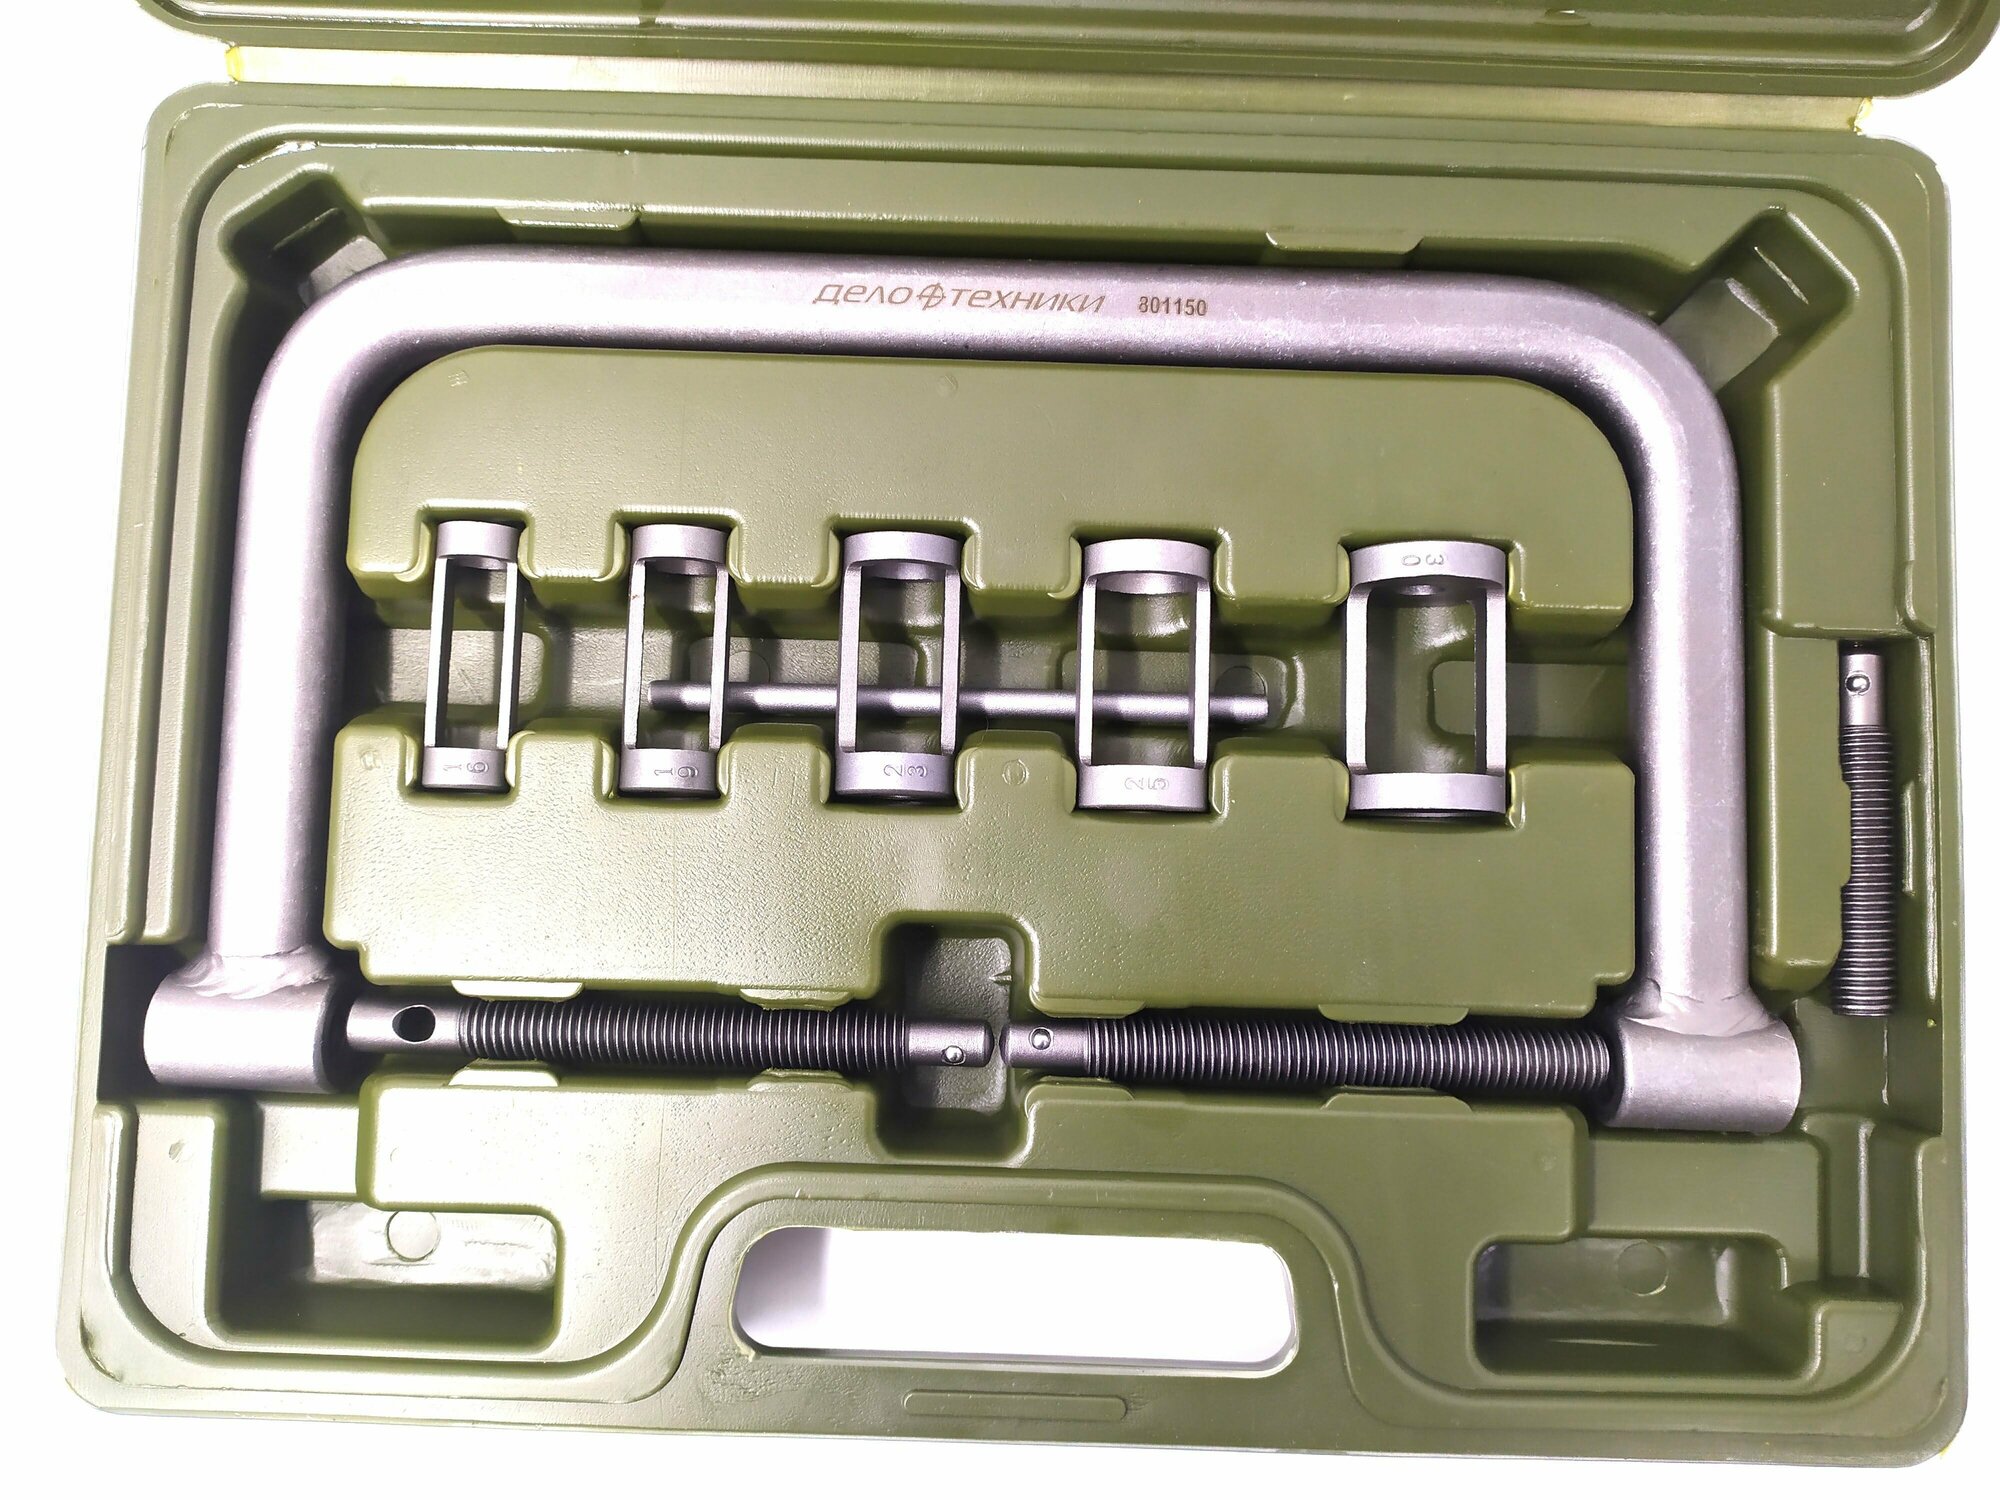 Рассухариватель струбцинный с насадками диаметр 16,19,23,25,30 мм, в кейсе Дело Техники, 801150